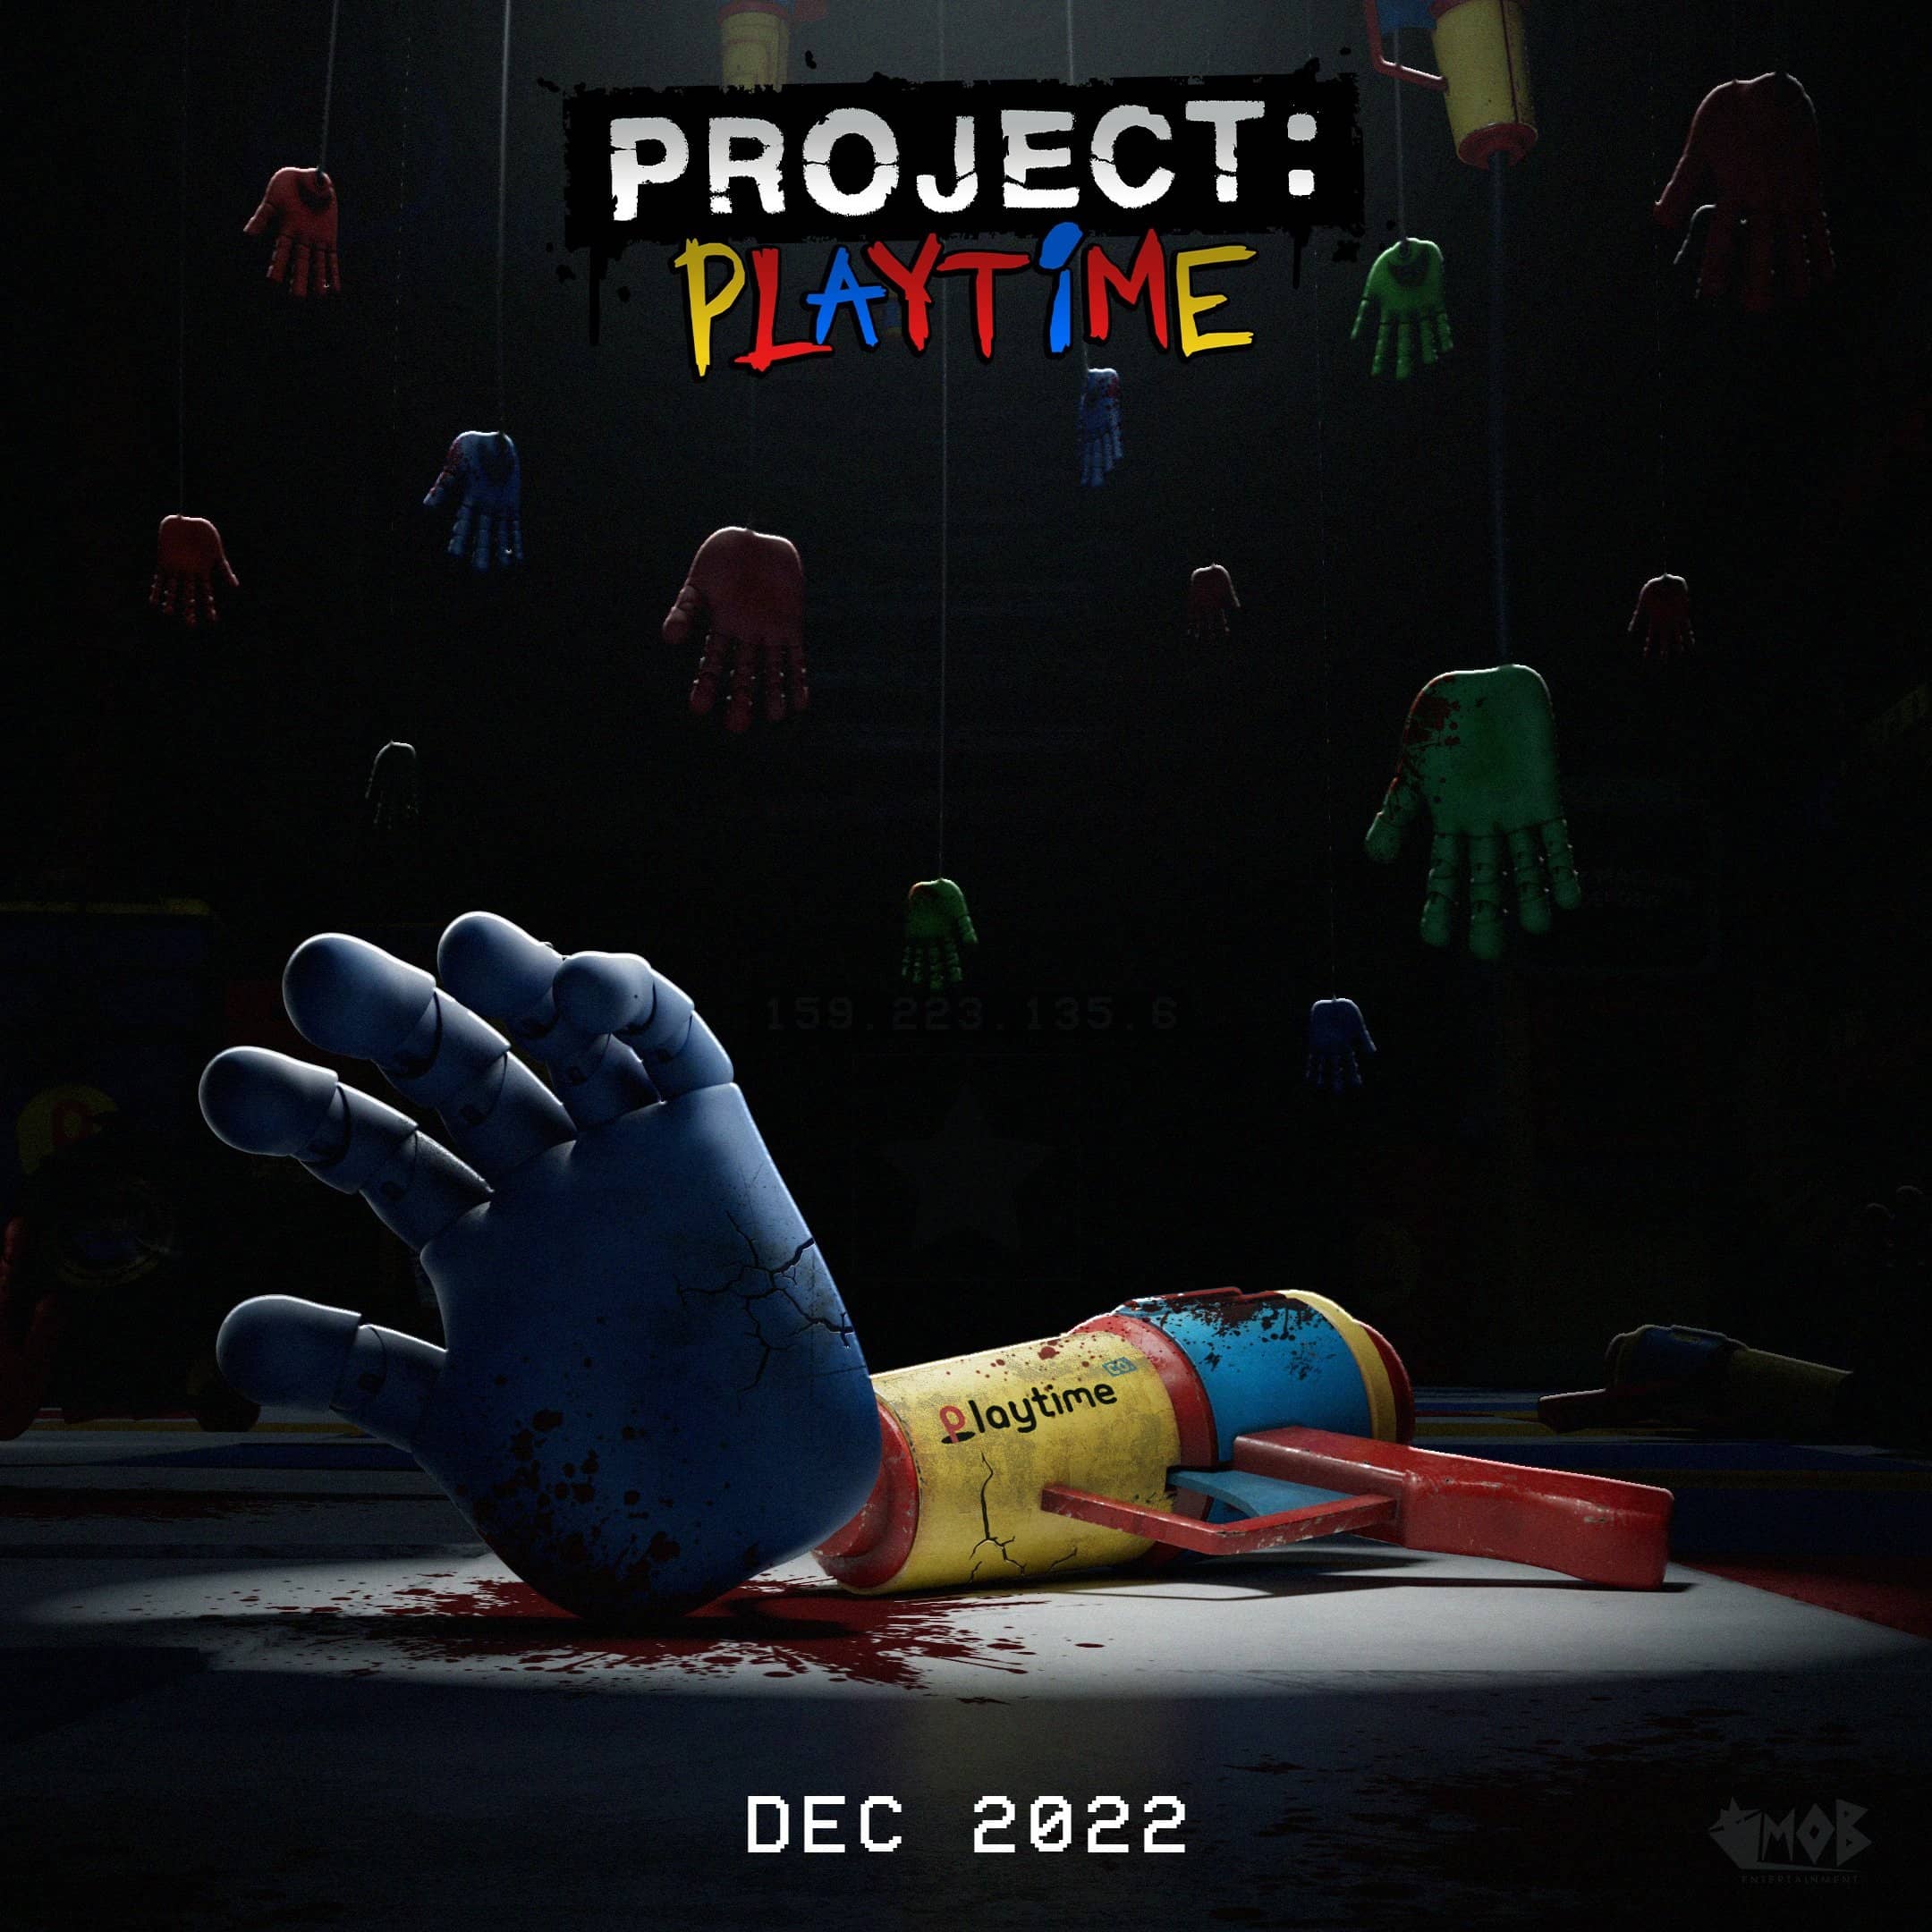 Poppy Playtime – projekt playtime